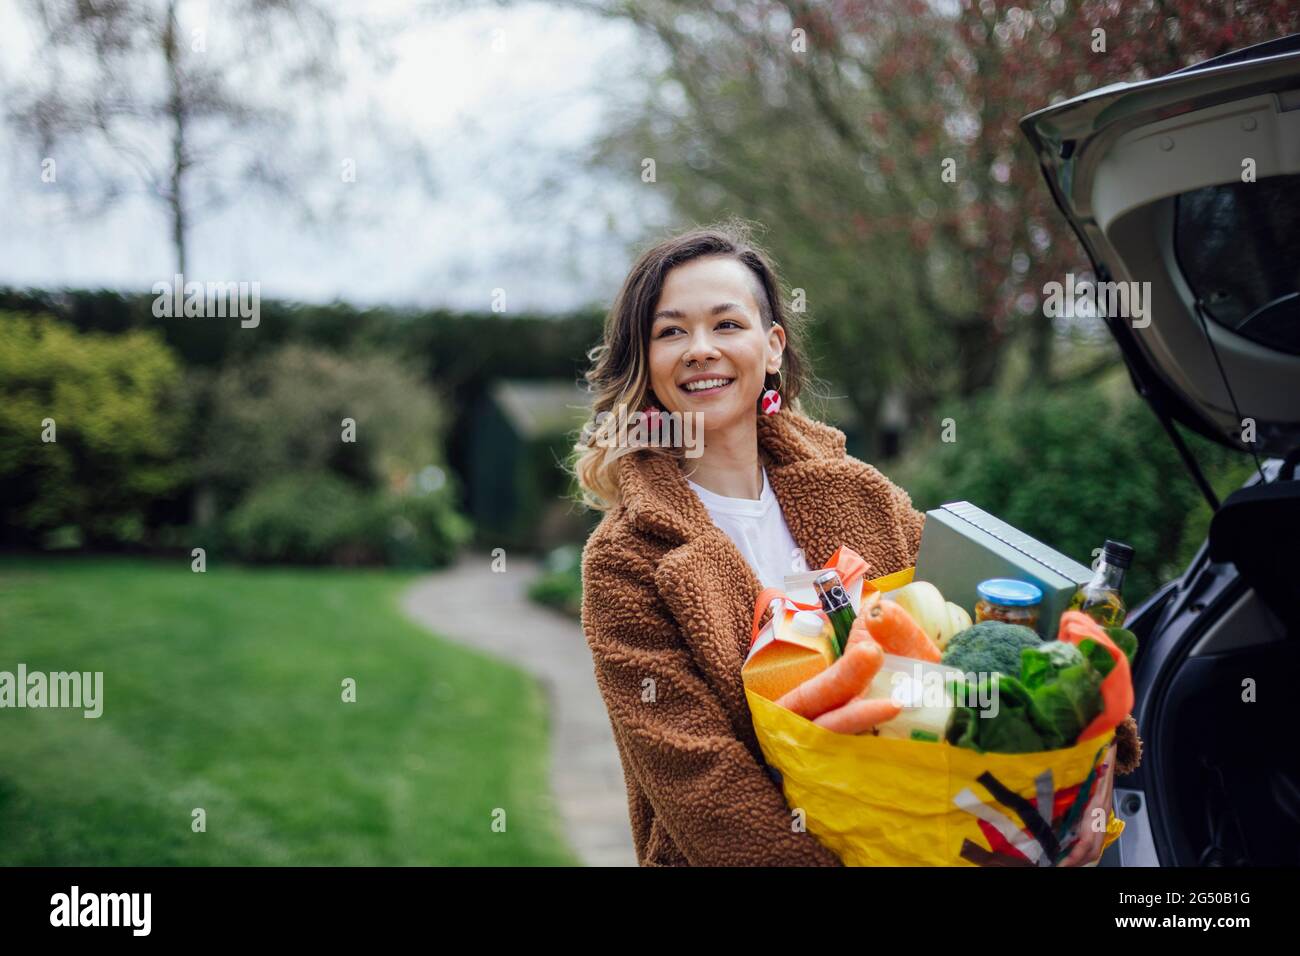 Une jeune femme souriant, regardant loin de l'appareil photo et tenant un sac de transport réutilisable rempli de provisions. Elle décharge la voiture. Banque D'Images